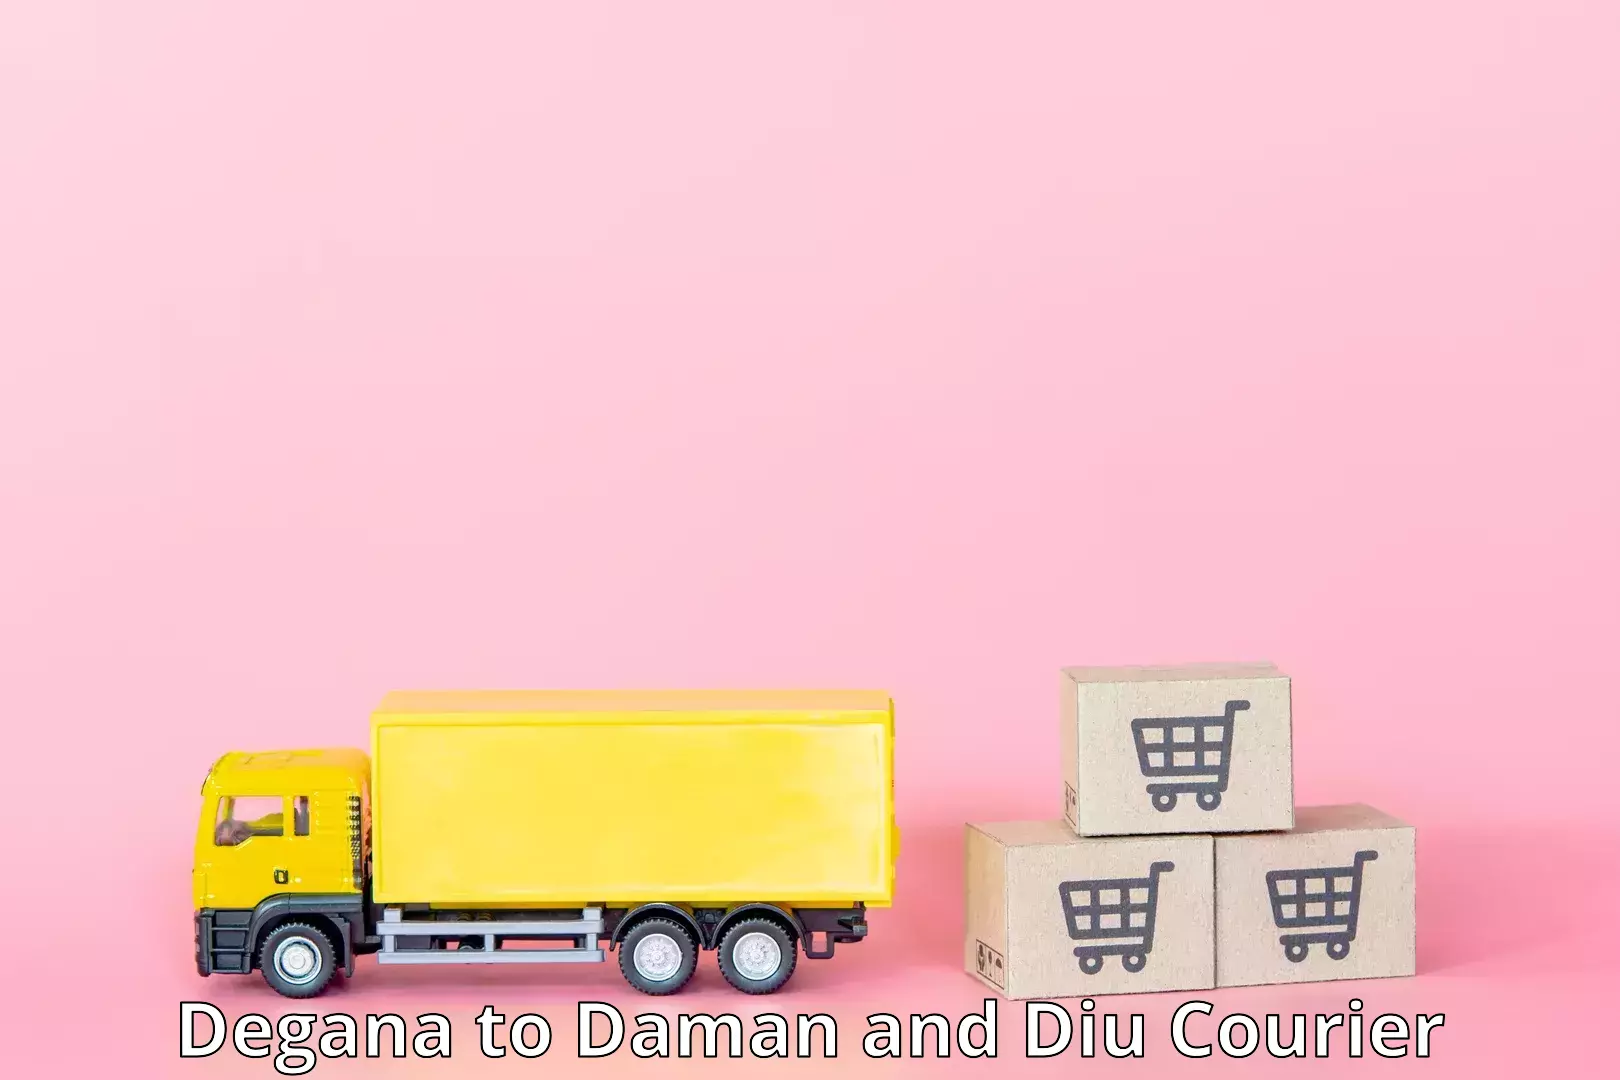 Global logistics network Degana to Daman and Diu